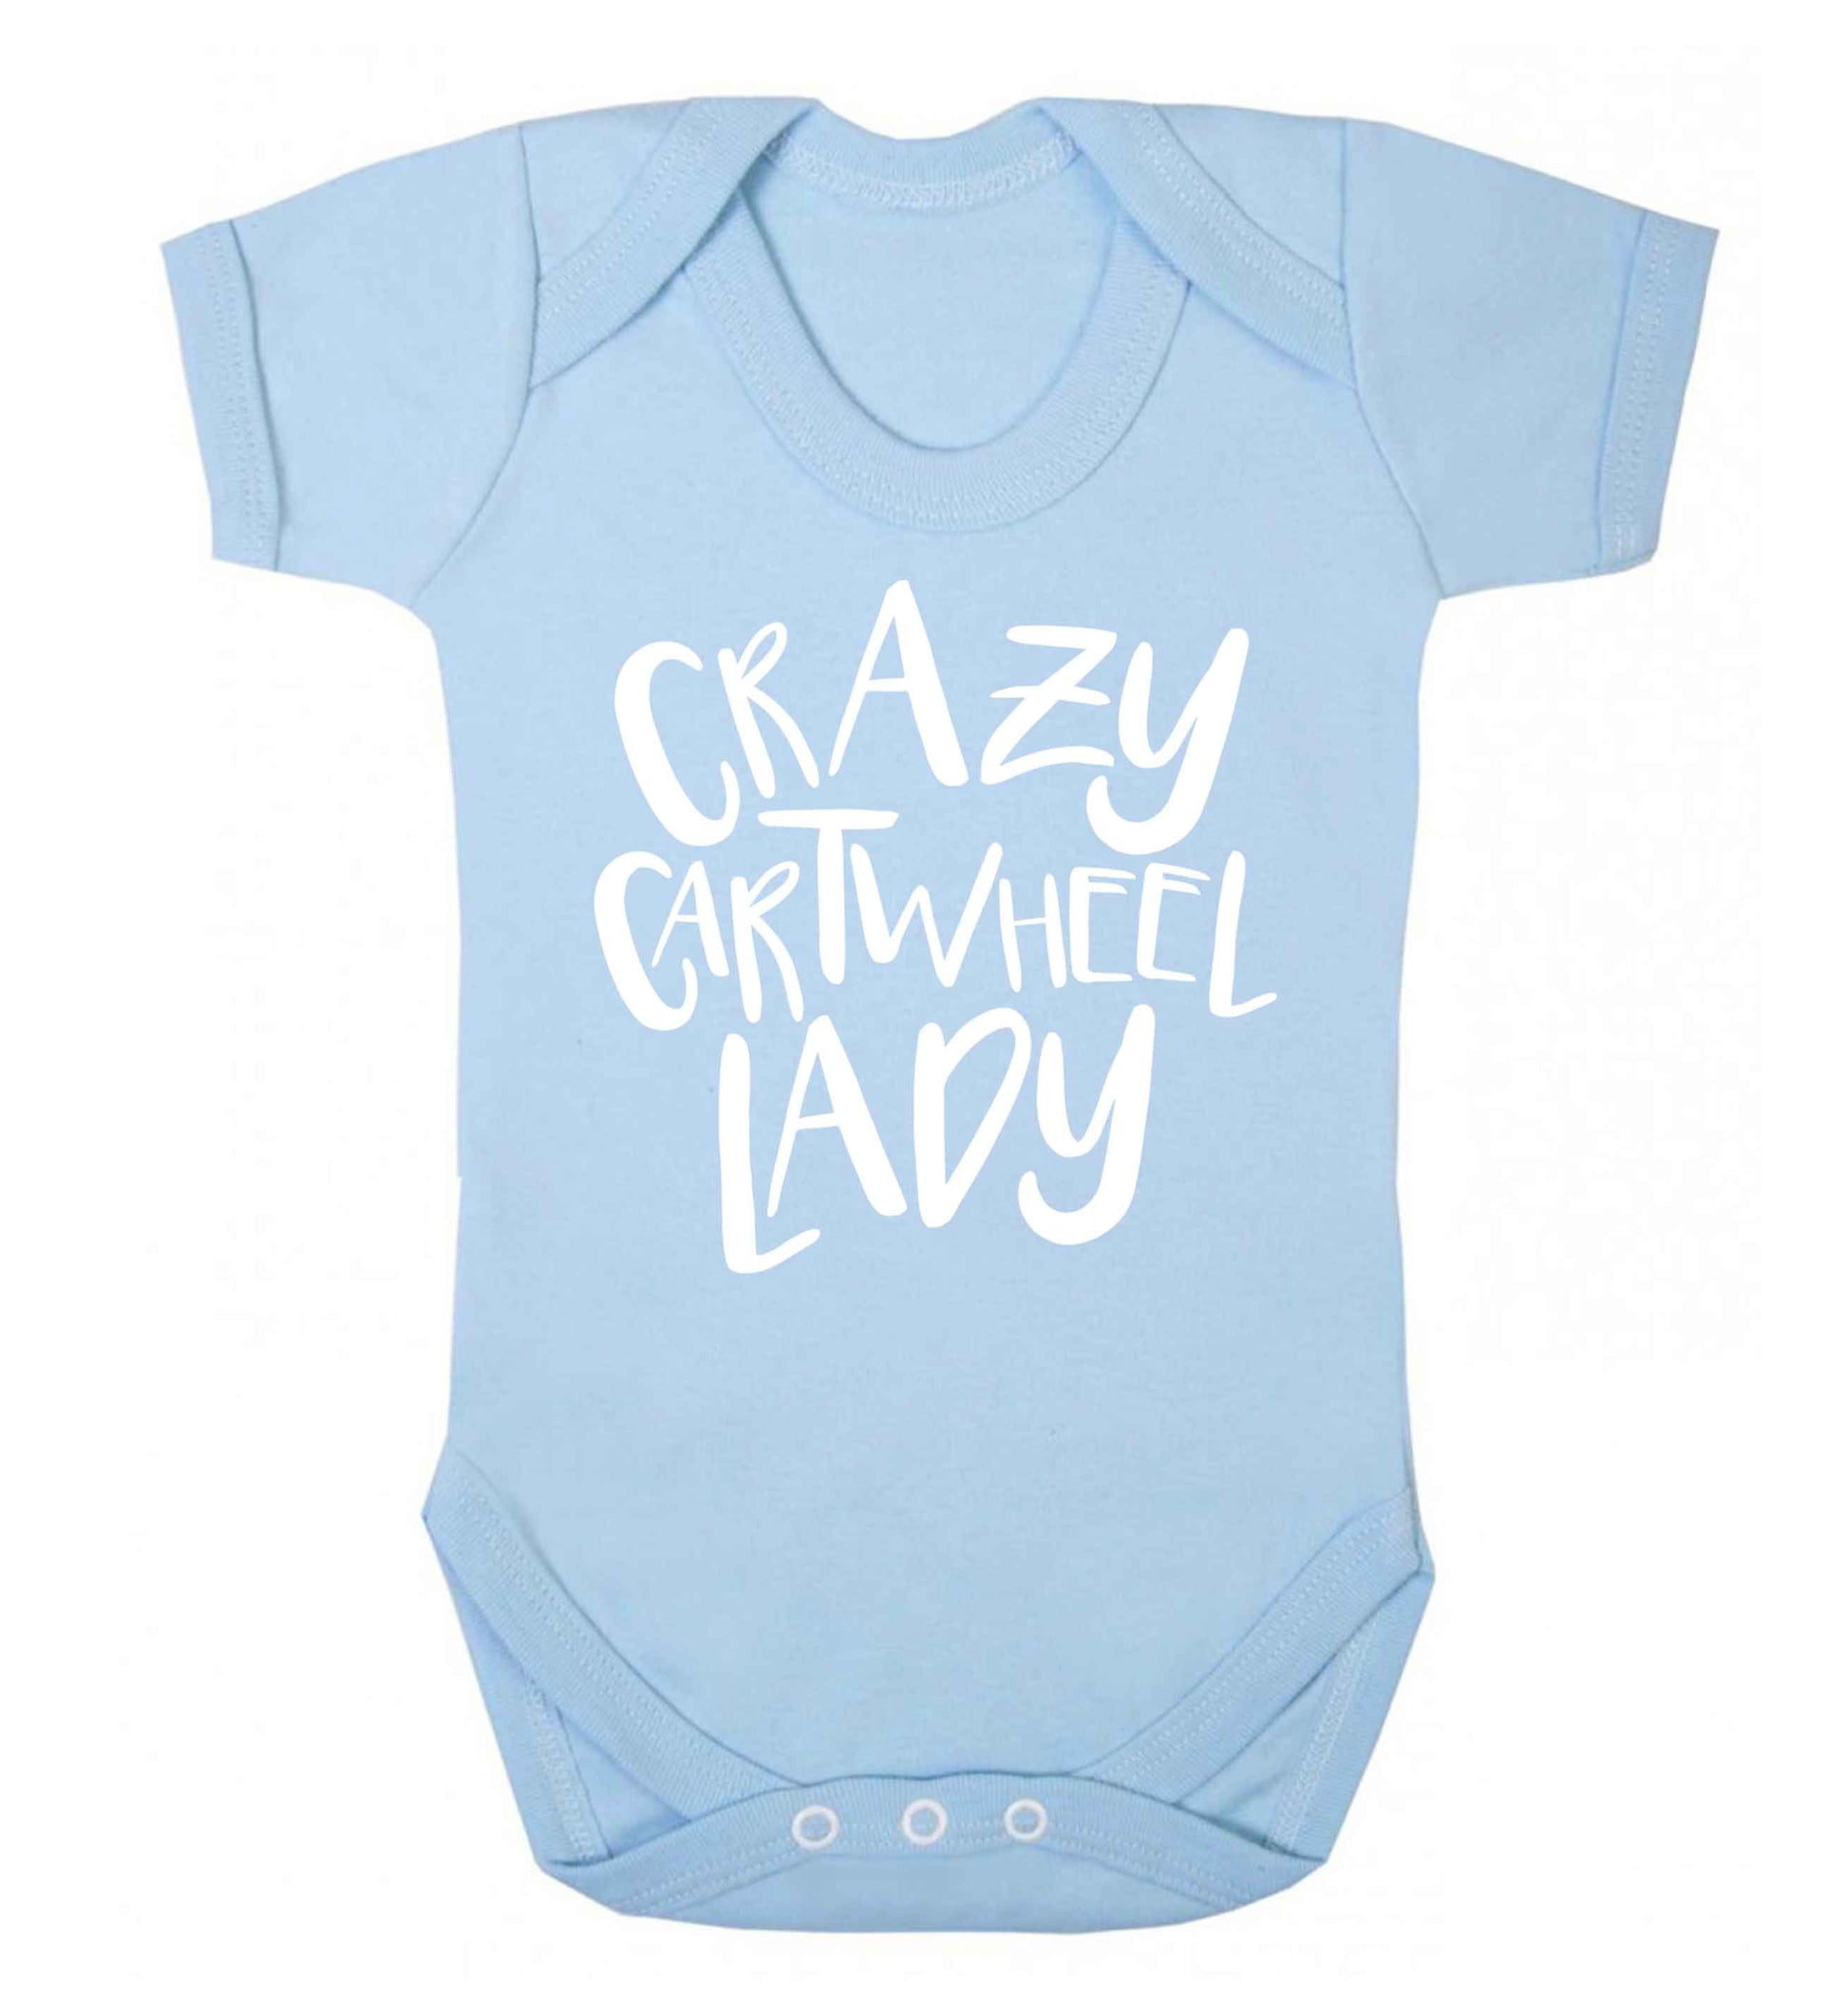 Crazy cartwheel lady Baby Vest pale blue 18-24 months